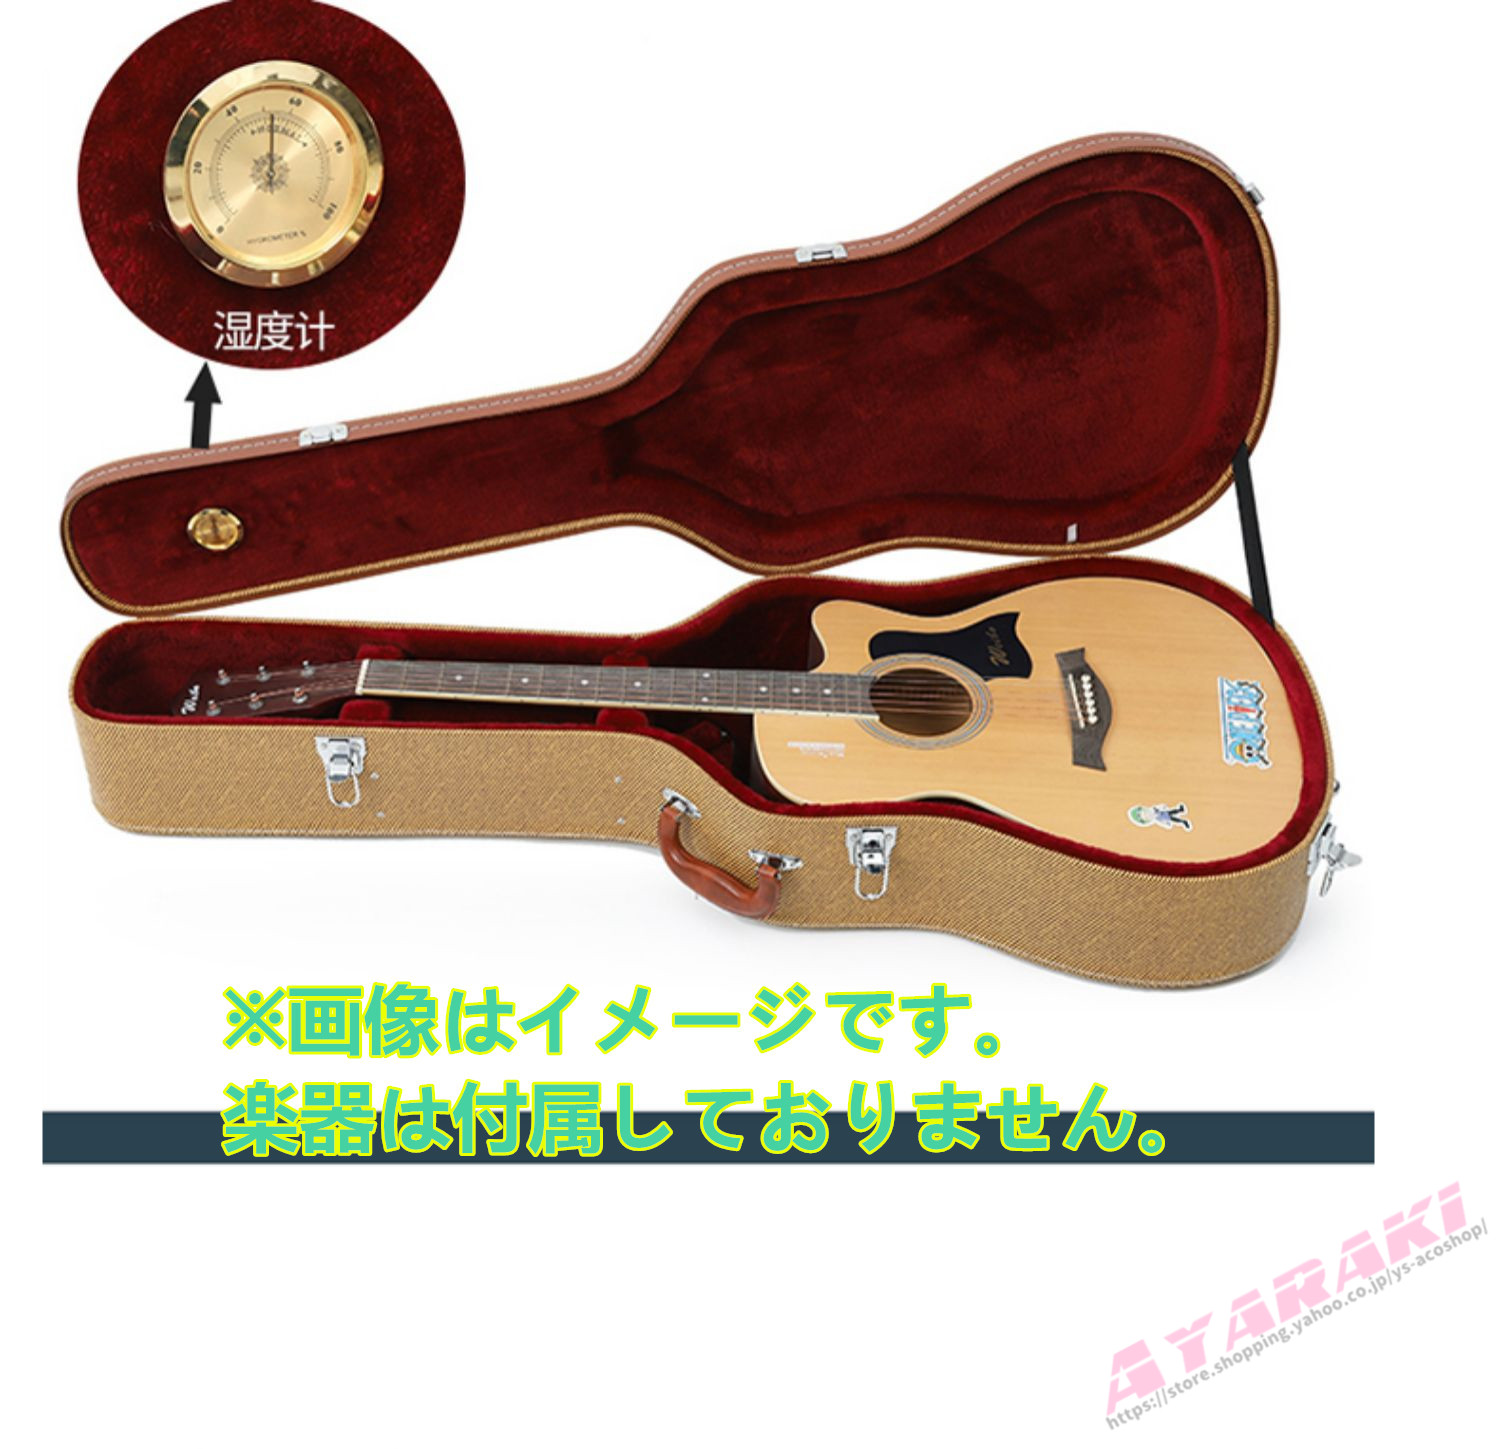 ギターケース ハードケース 木製 ギグバッグ アコギケース 